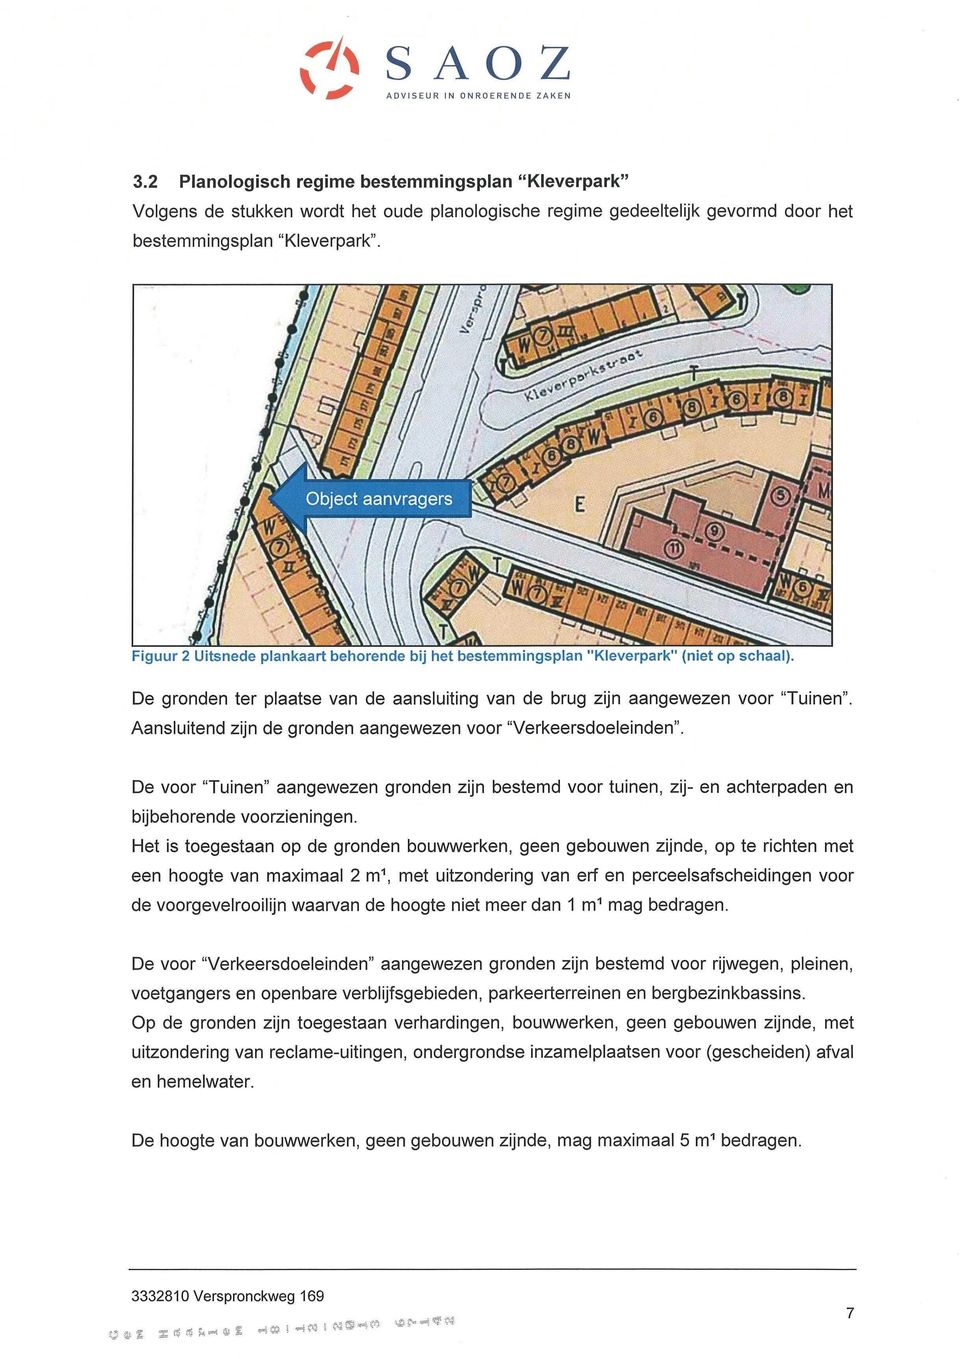 Figuur 2 Uitsnede plankaart behorende bij het bestemmingsplan "Kleverpark" (niet op schaal). De gronden ter plaatse van de aansluiting van de brug zijn aangewezen voor "Tuinen".